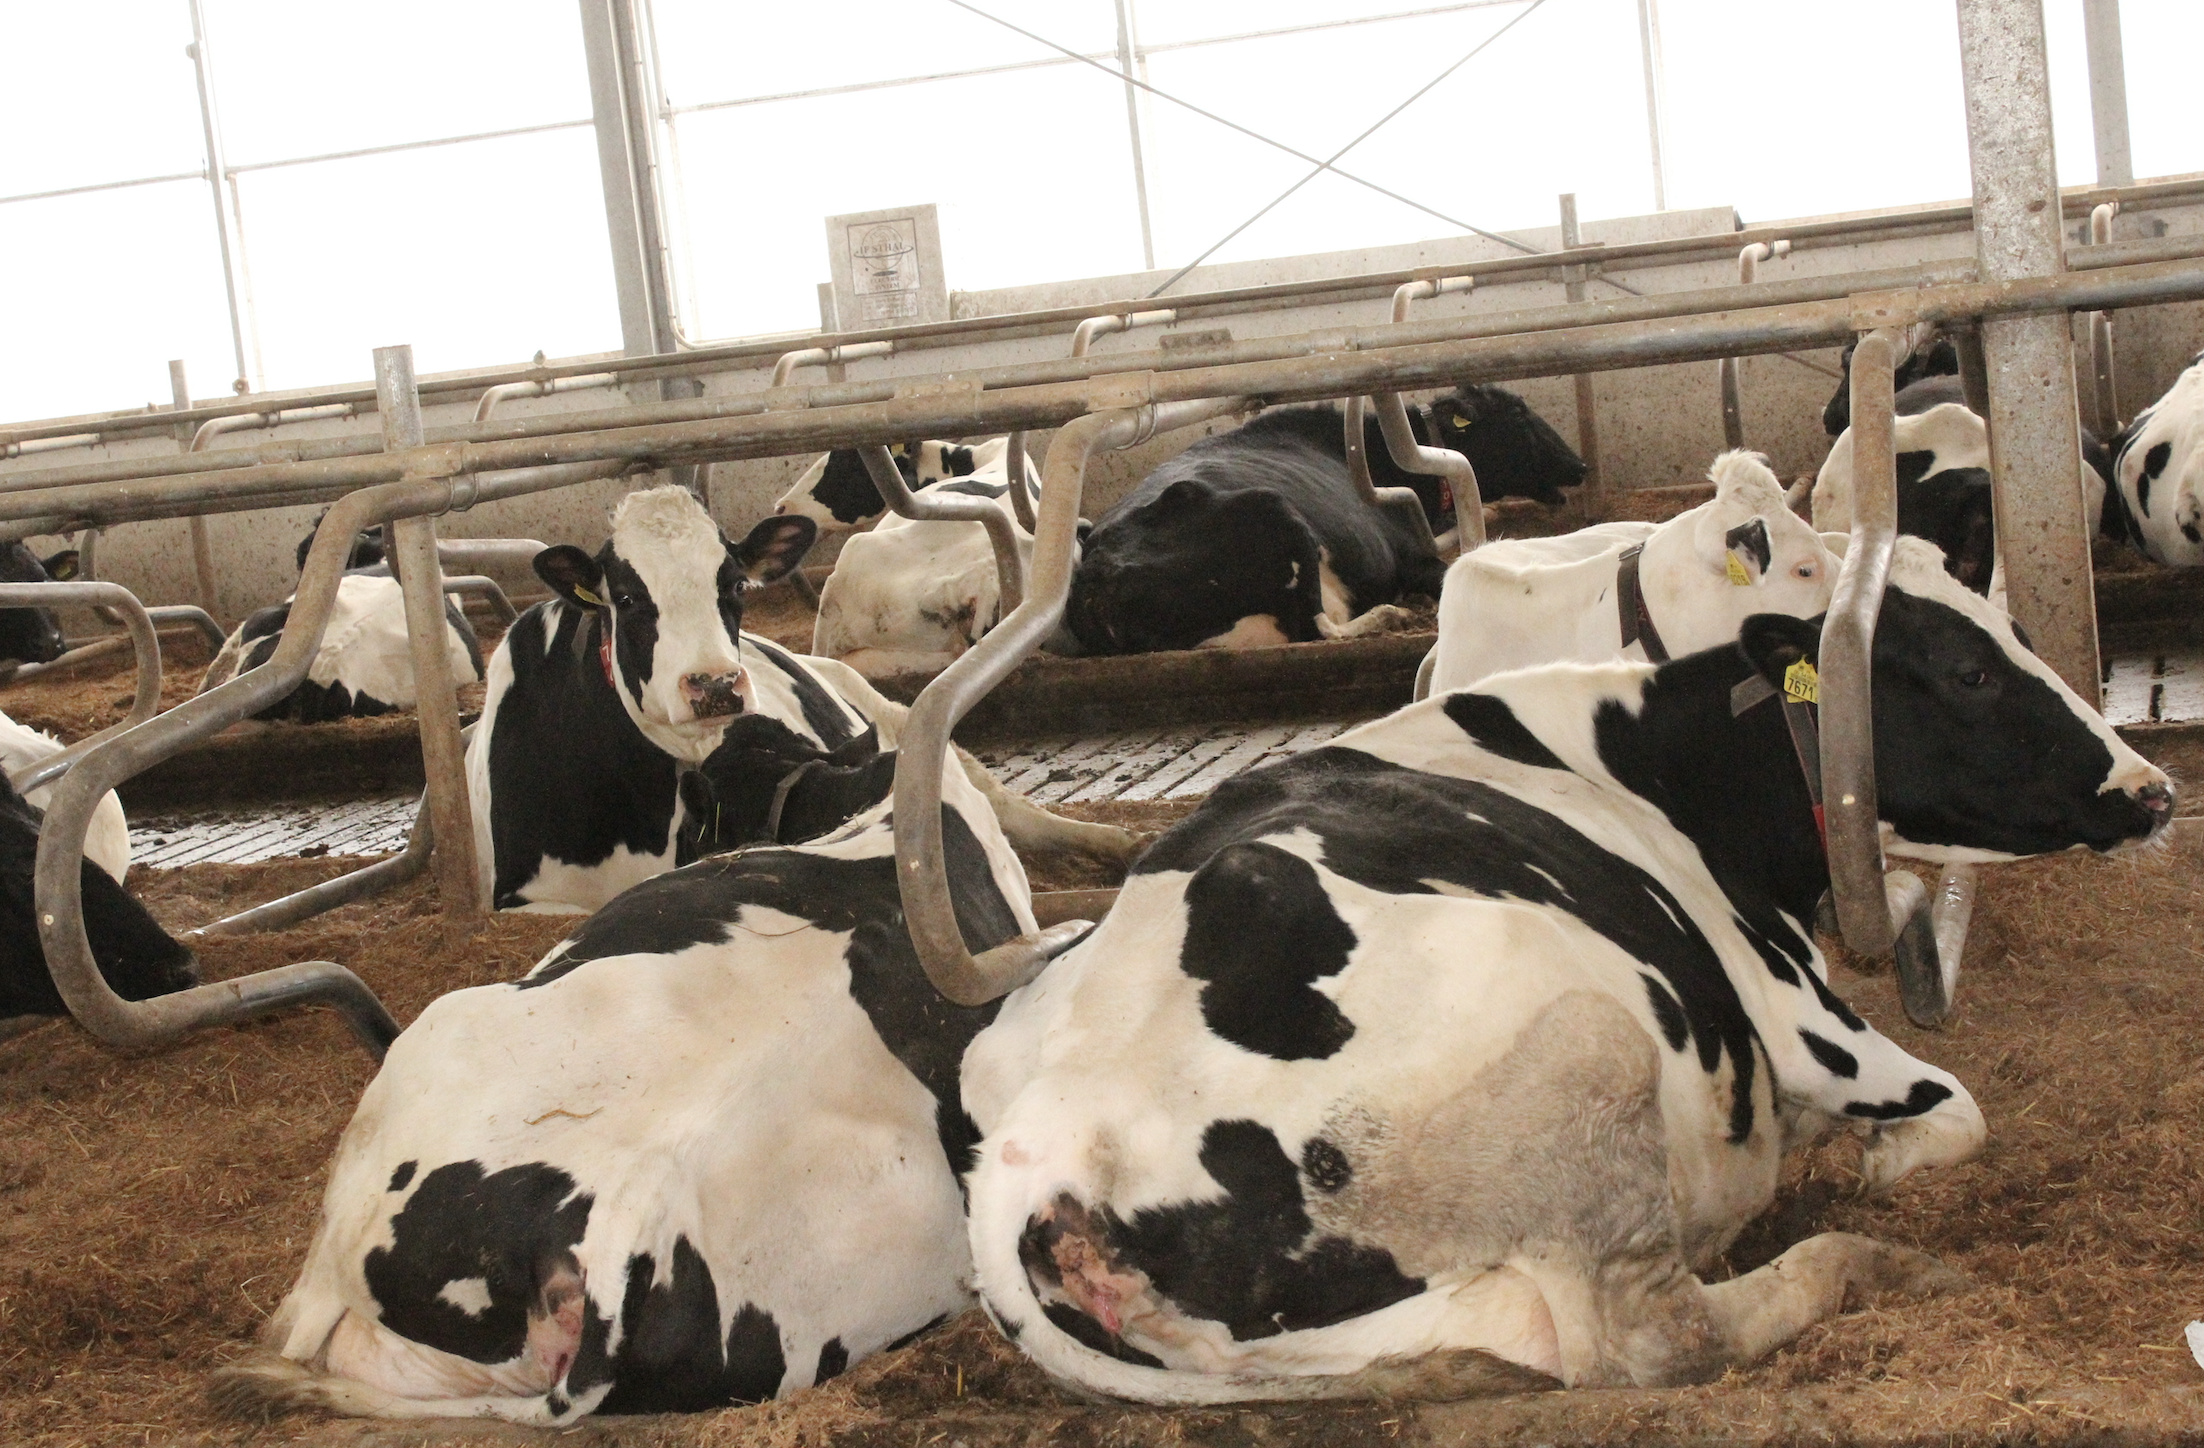 – Materace słomiano-wapienne w legowiskach dla krów sprawdzają się dobrze – mówią hodowcy